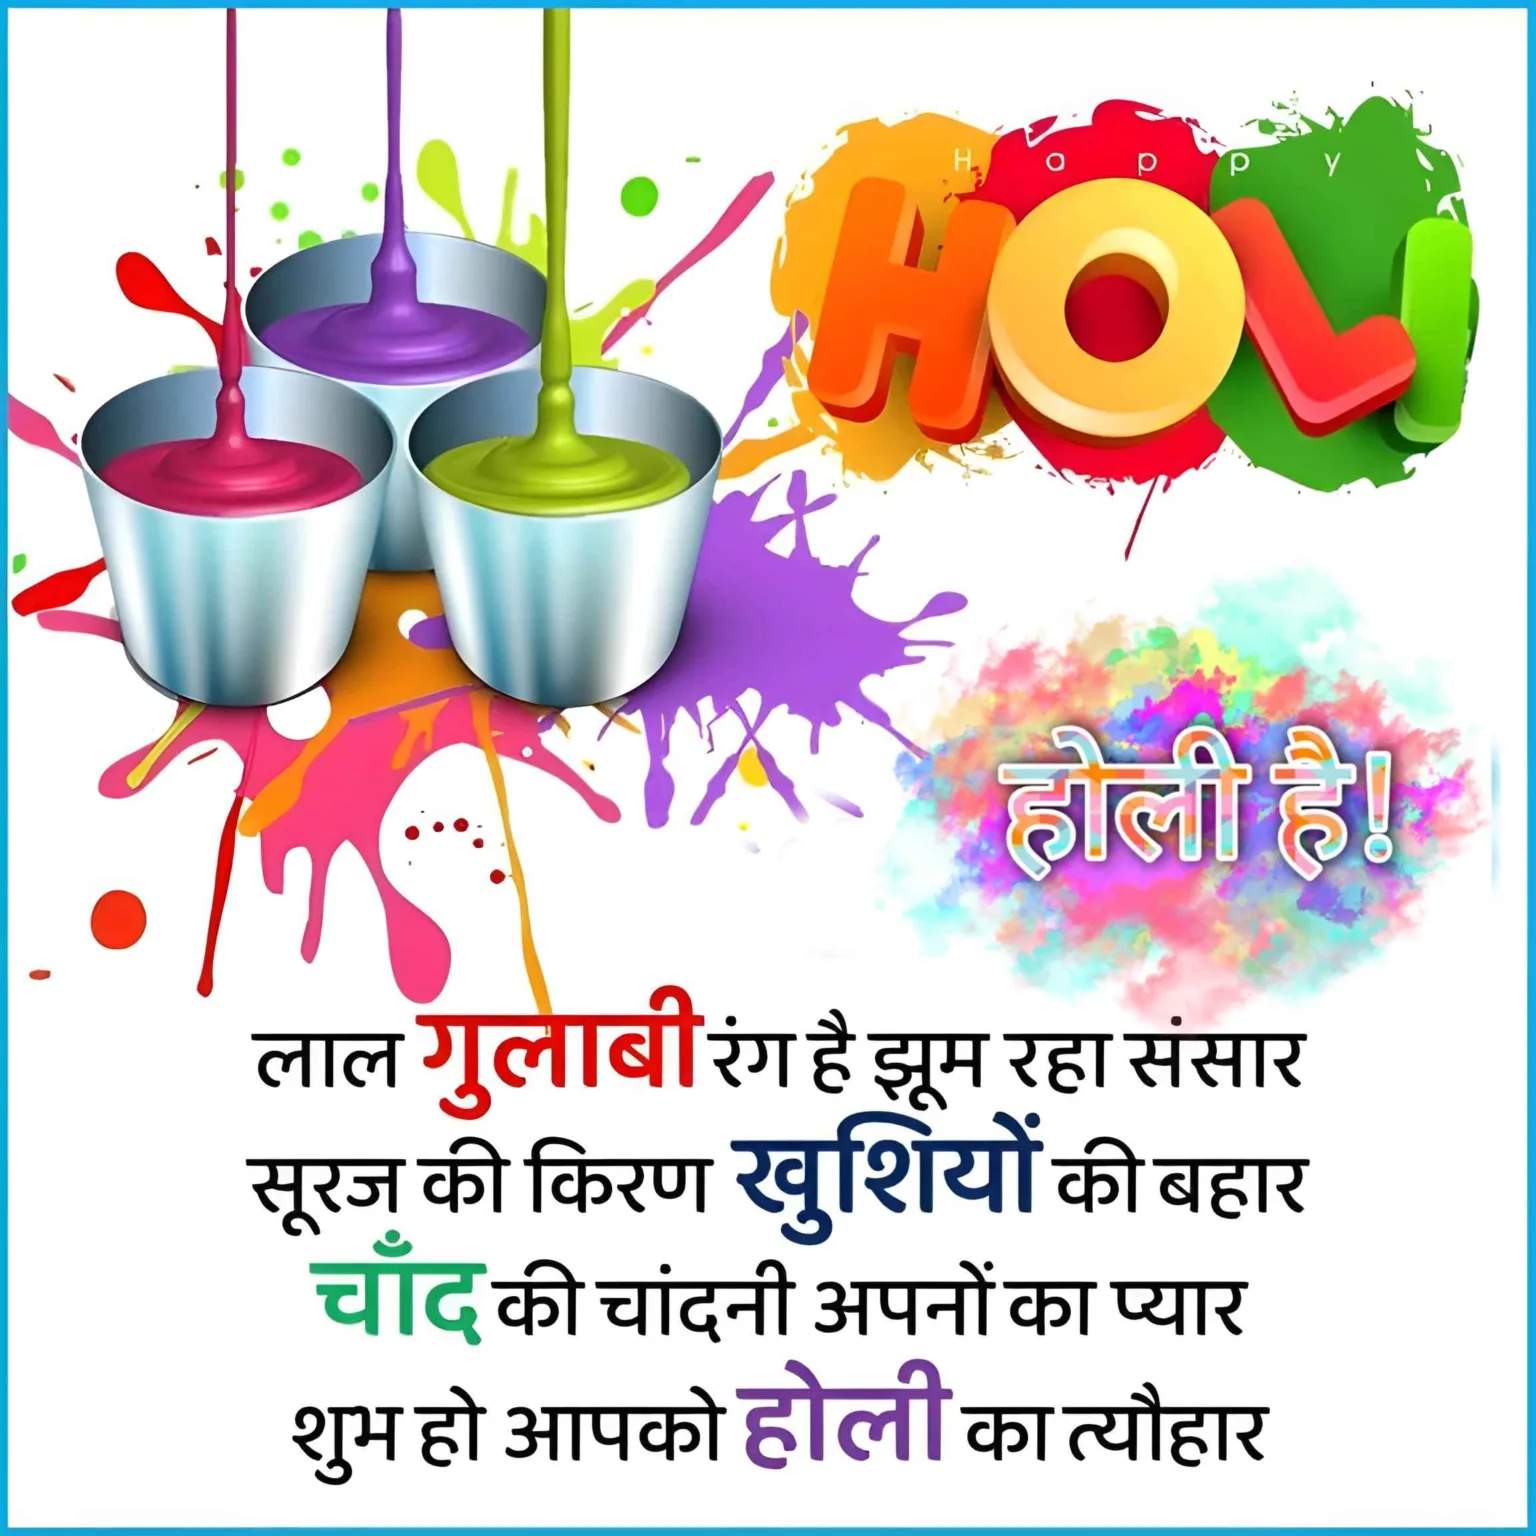 Happy Holi Wishes in Hindi Image